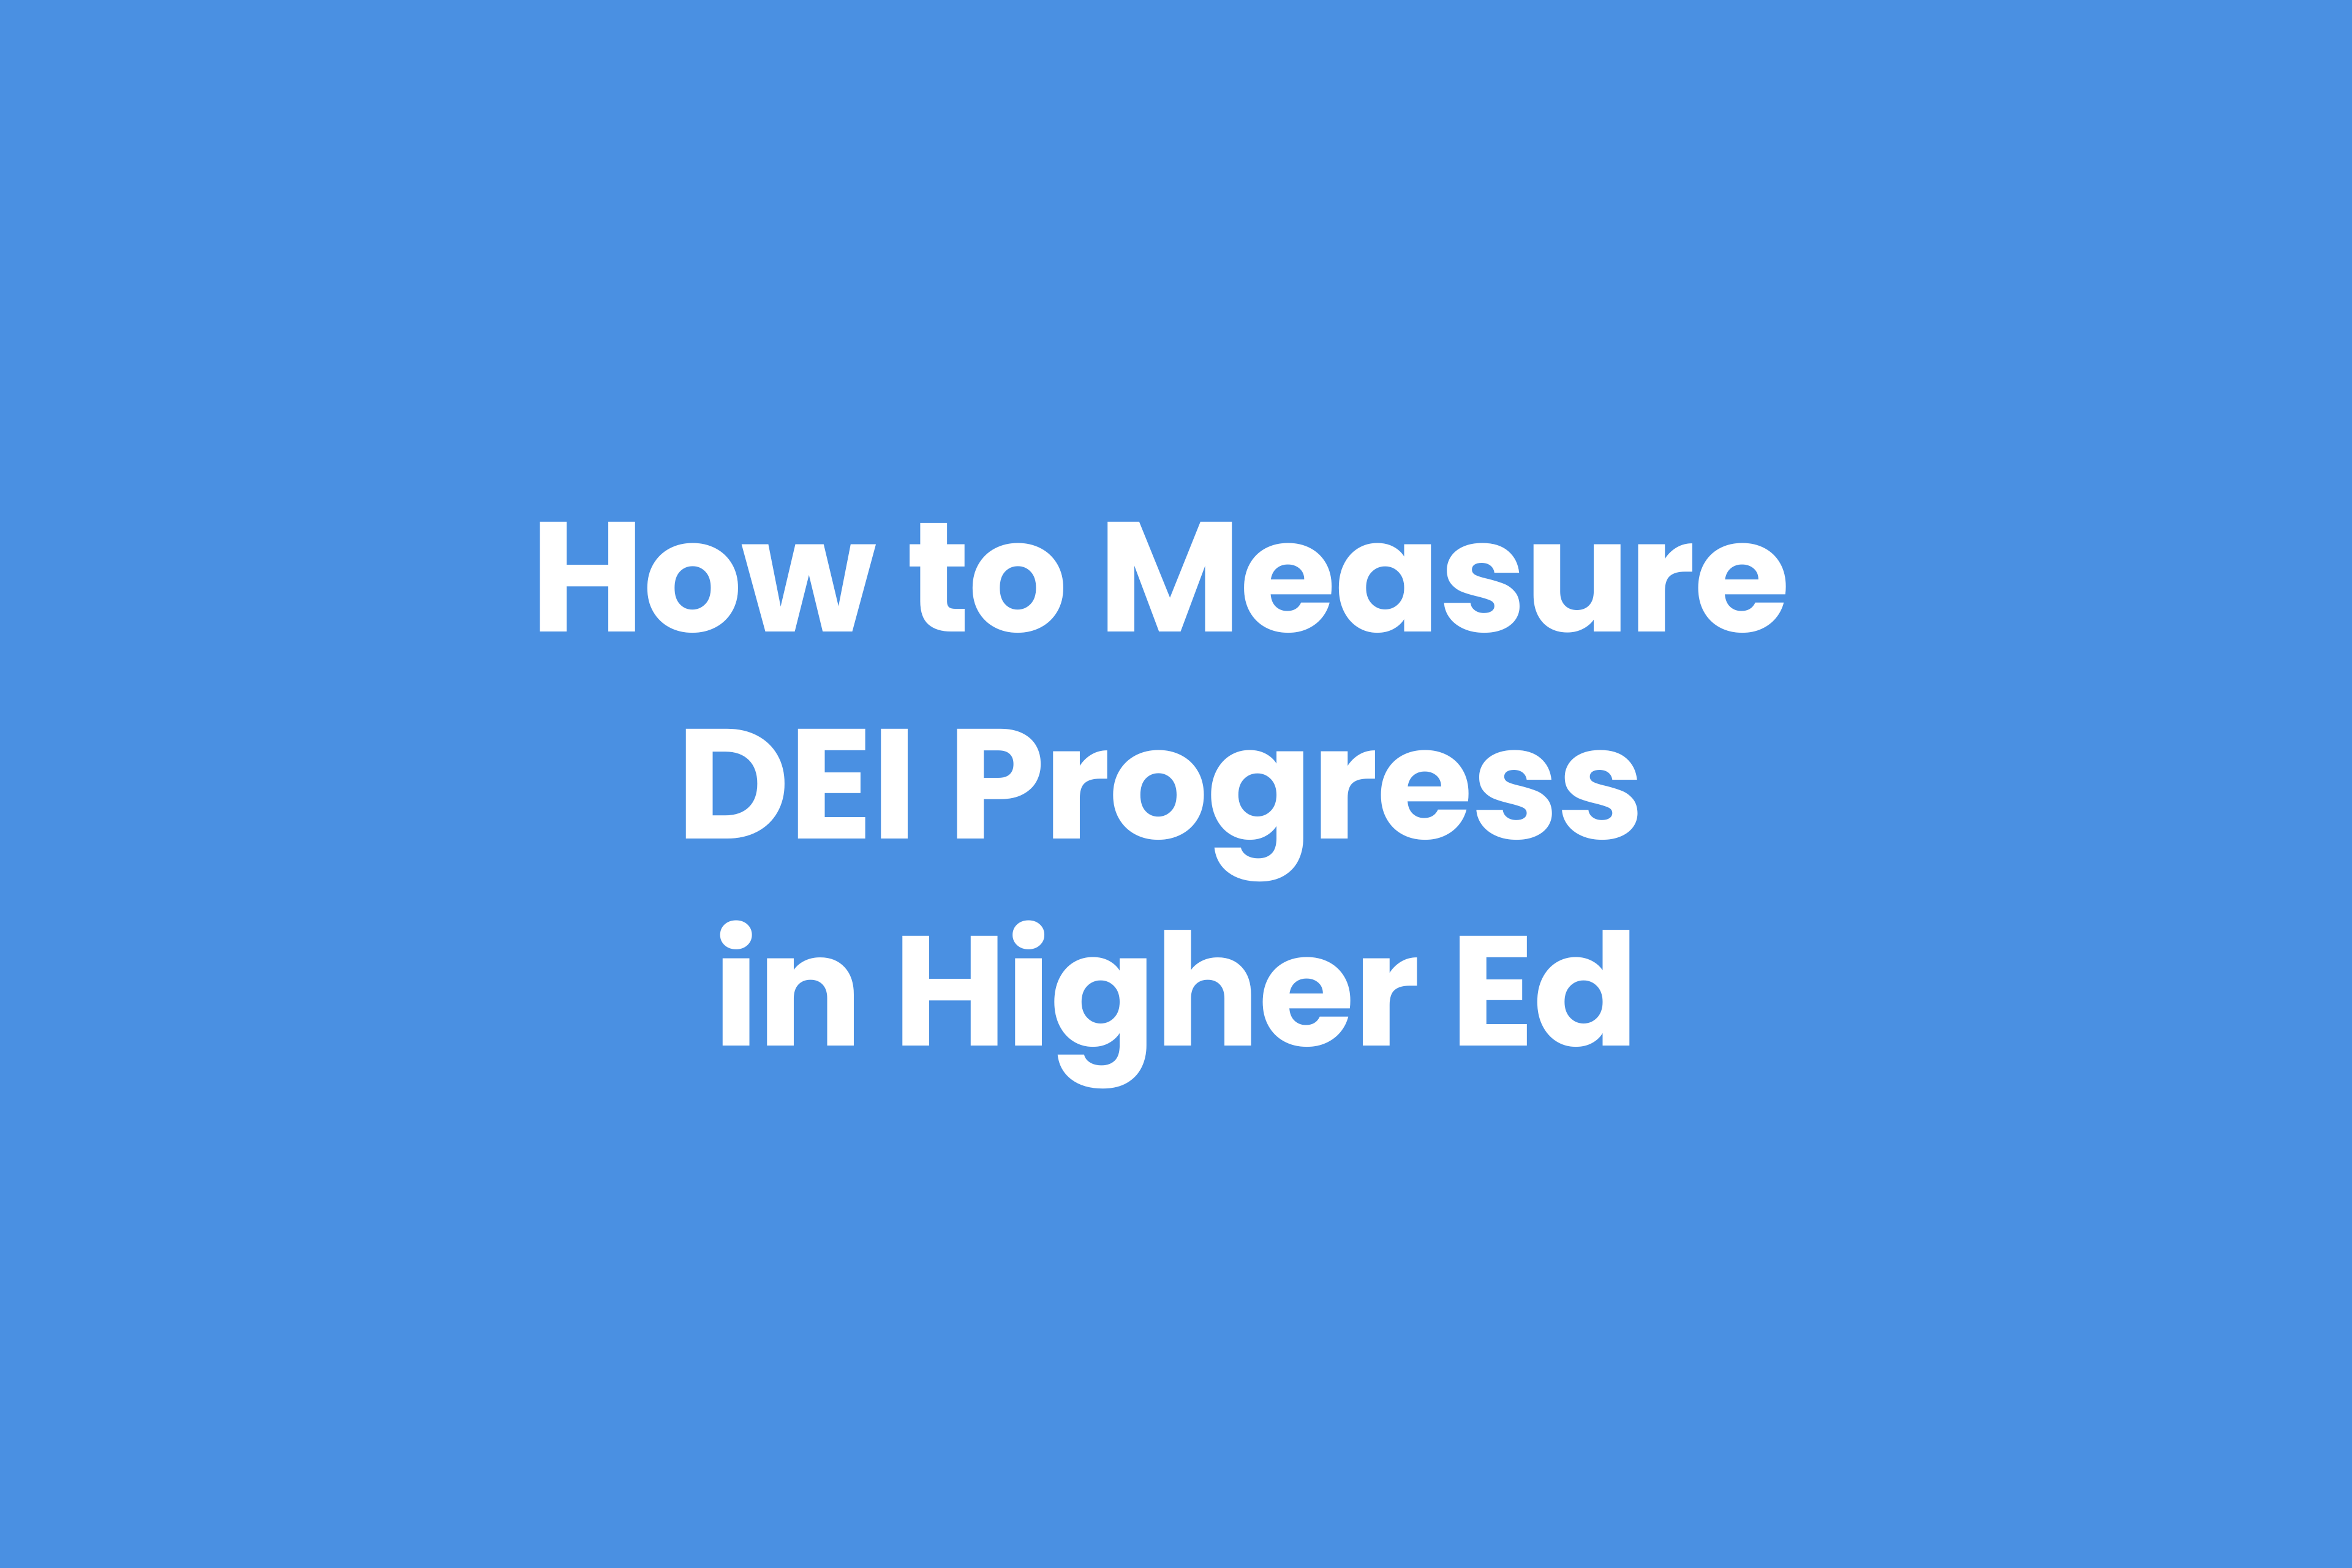 DEI training for Higher Ed